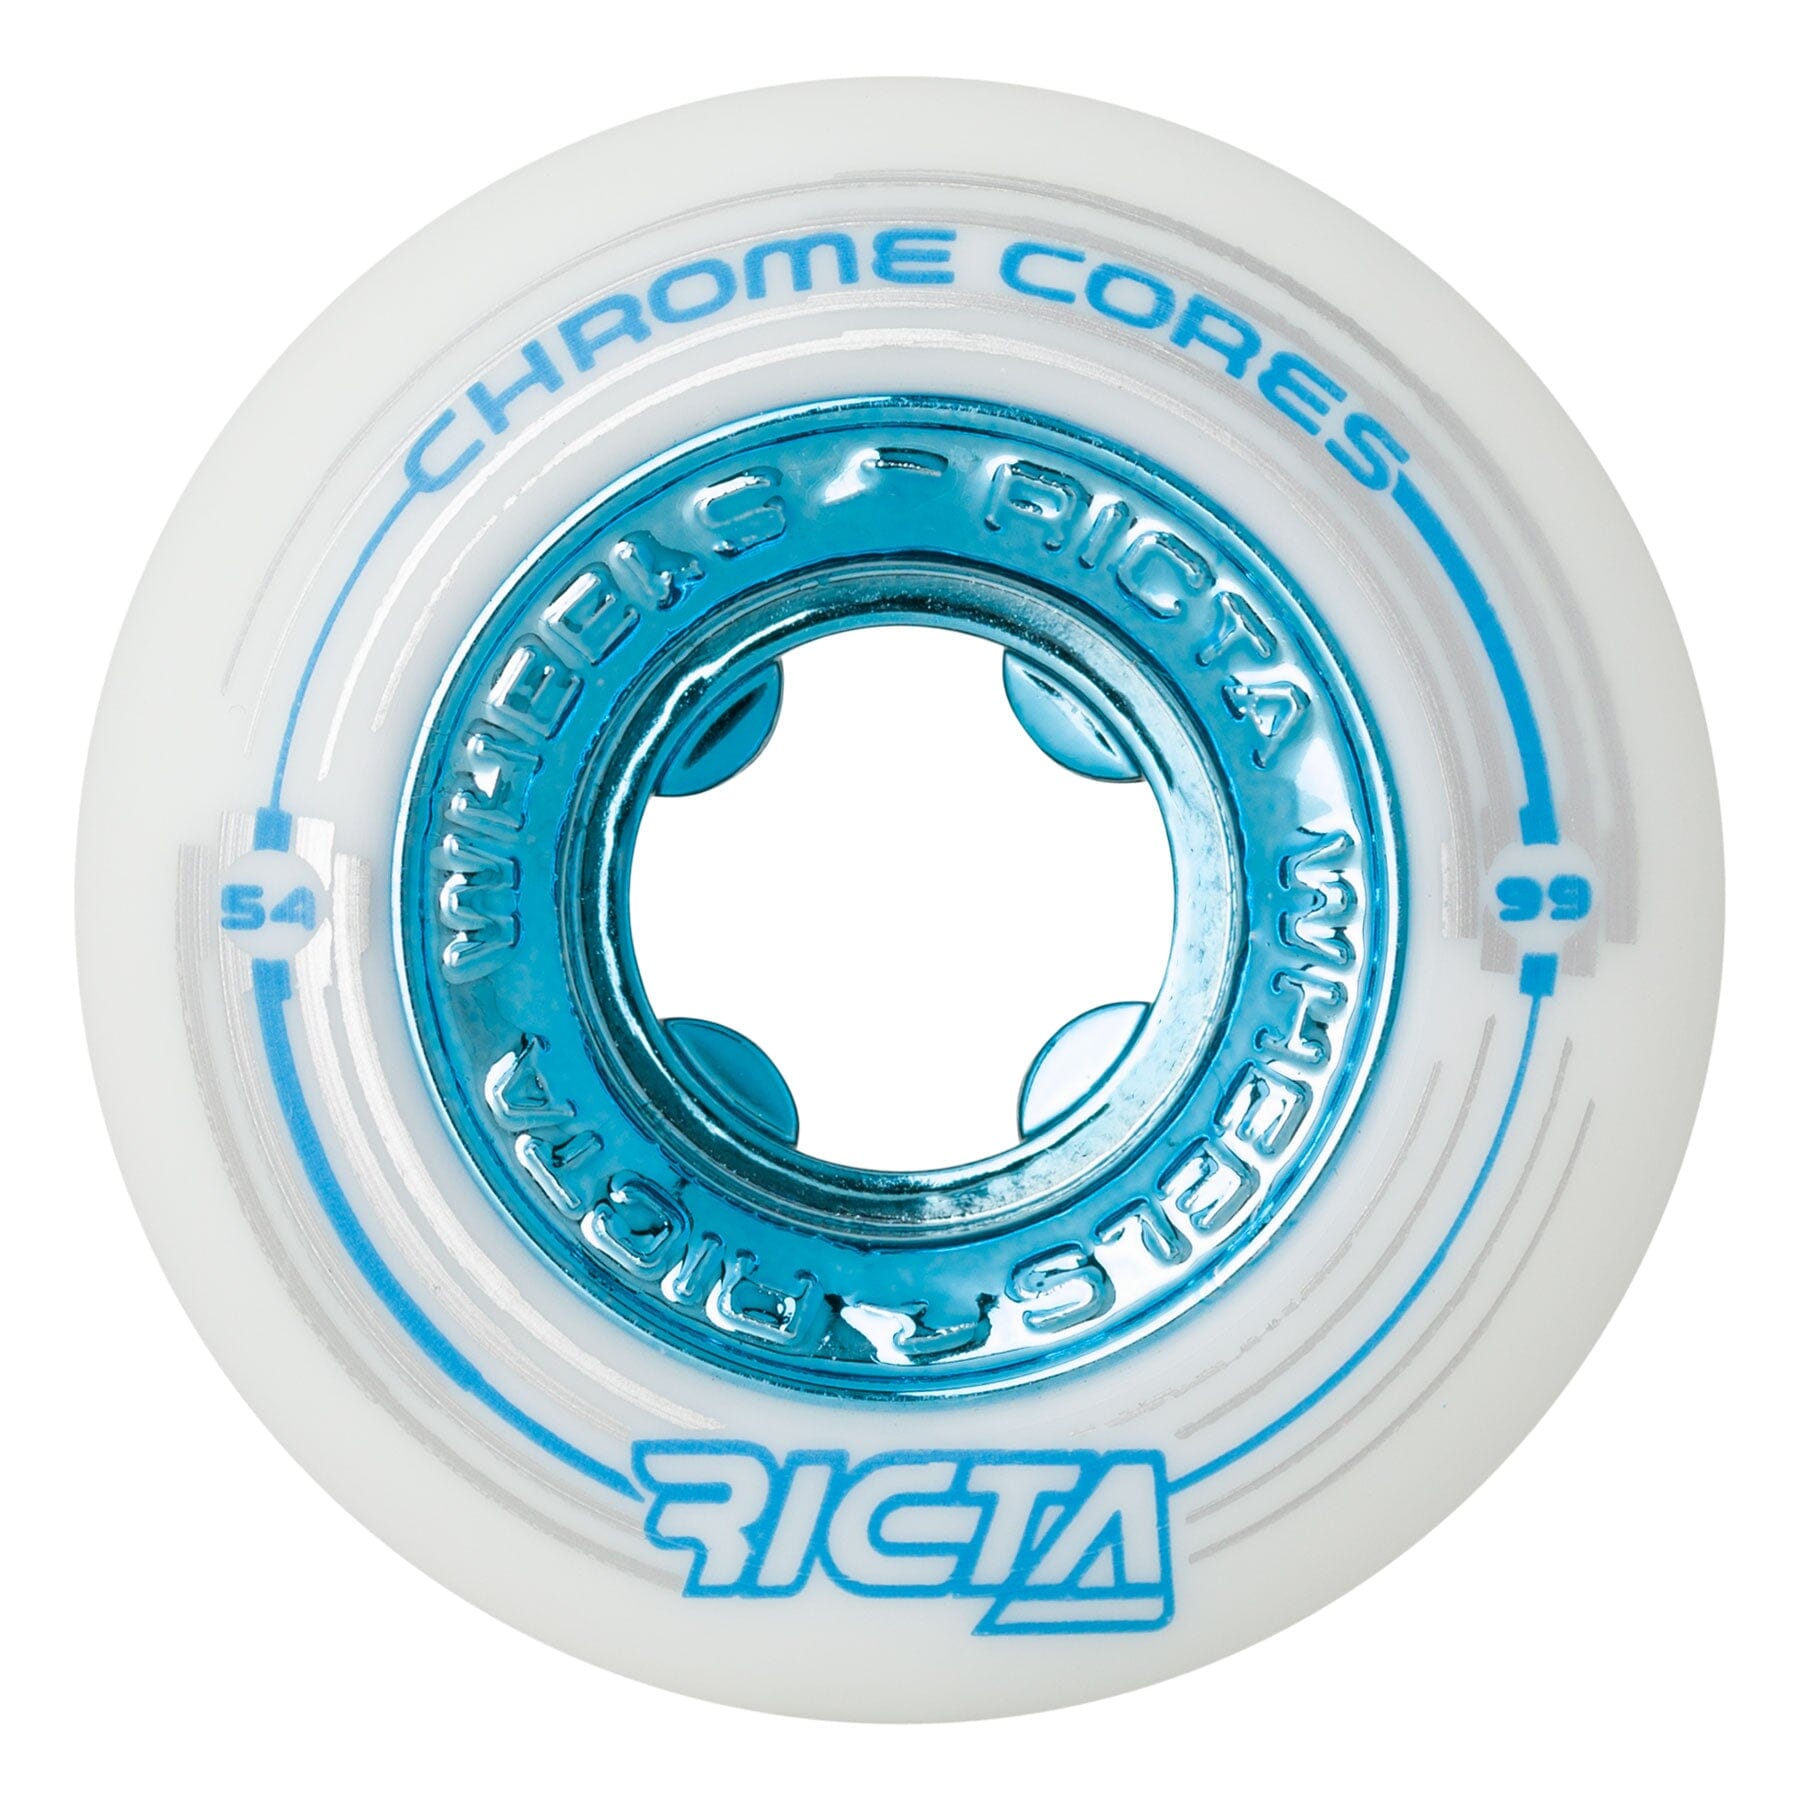 Ricta Chrome Core White Wheels 99A 54MM wheels Ricta 